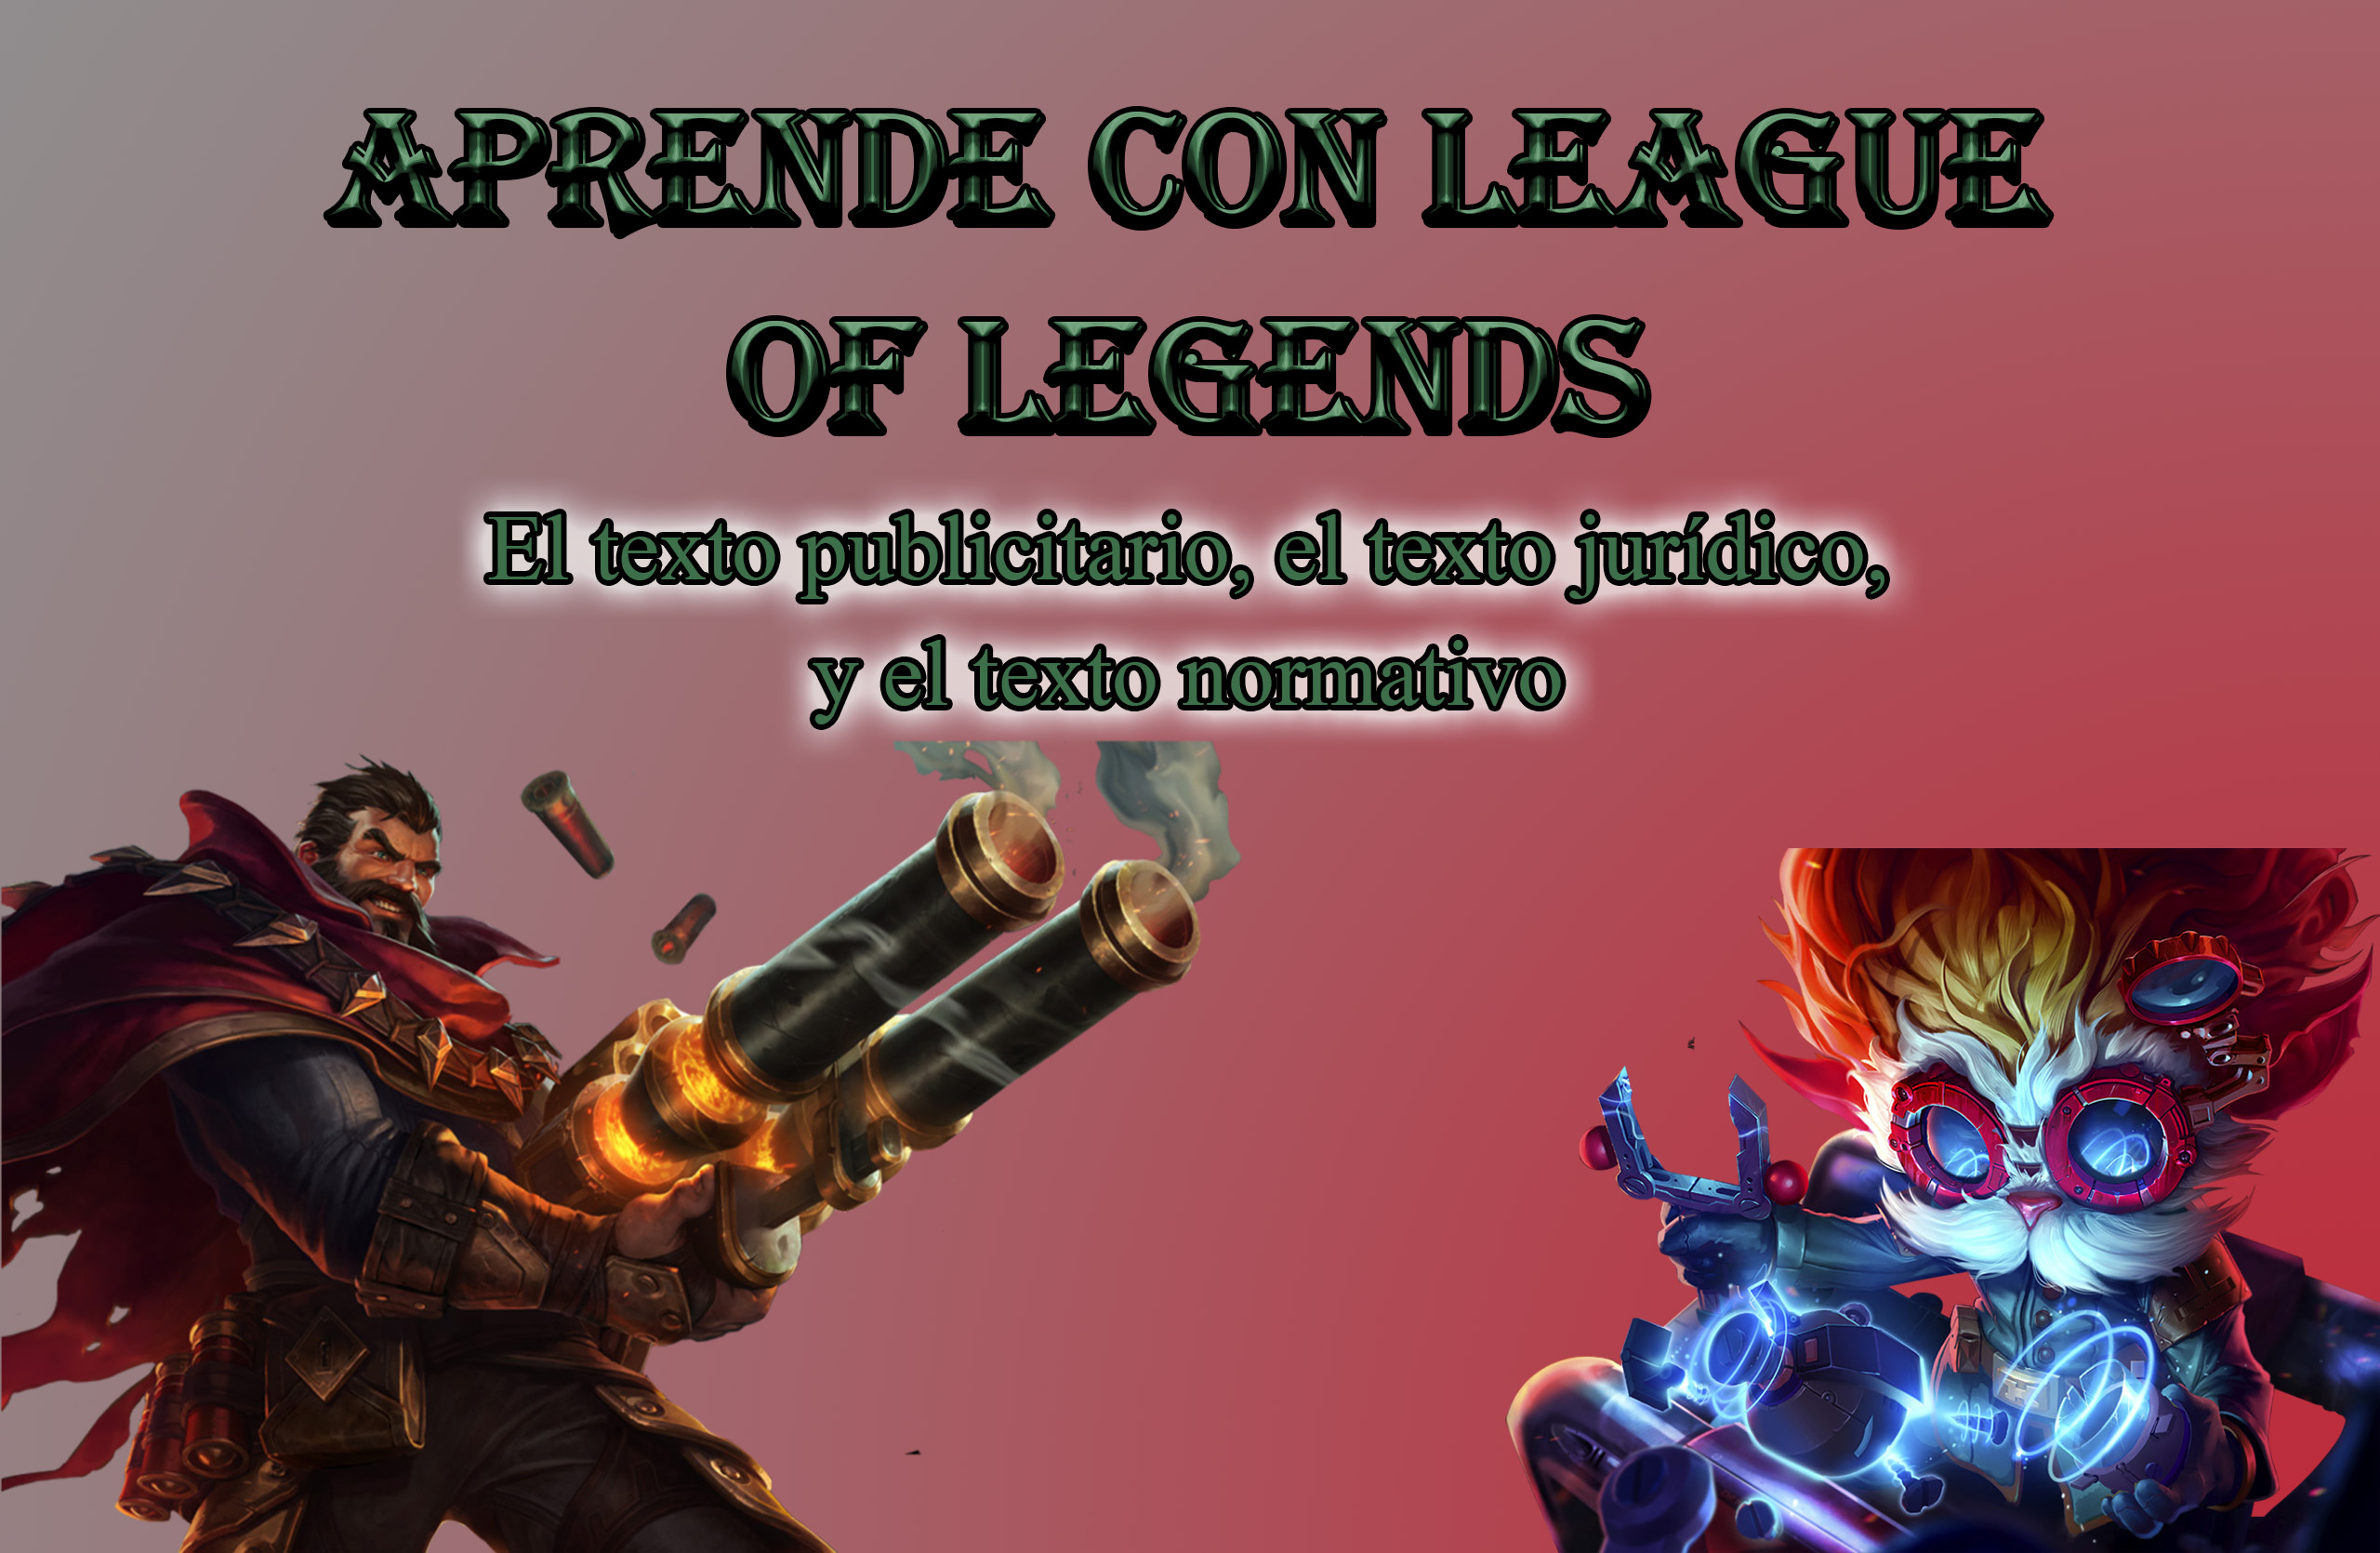 Aprende con League of Legends - El texto publicitario, el texto jurídico y el texto normativo